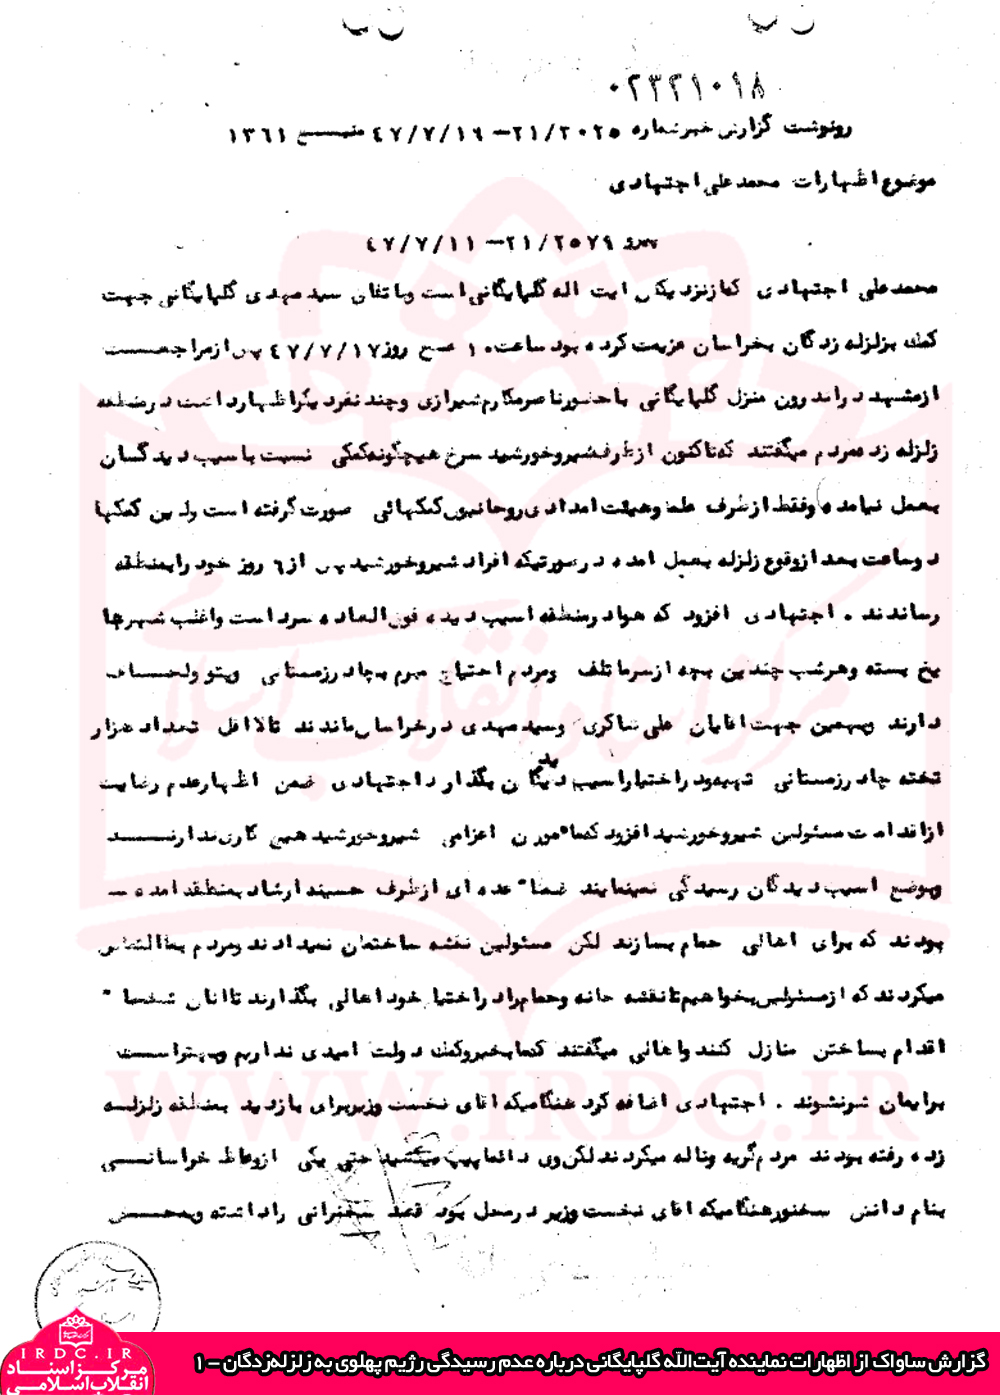 واقعیتی از عملکرد رژیم پهلوی در زلزله فردوس سال ۱۳۴۷+ اسناد ساواک